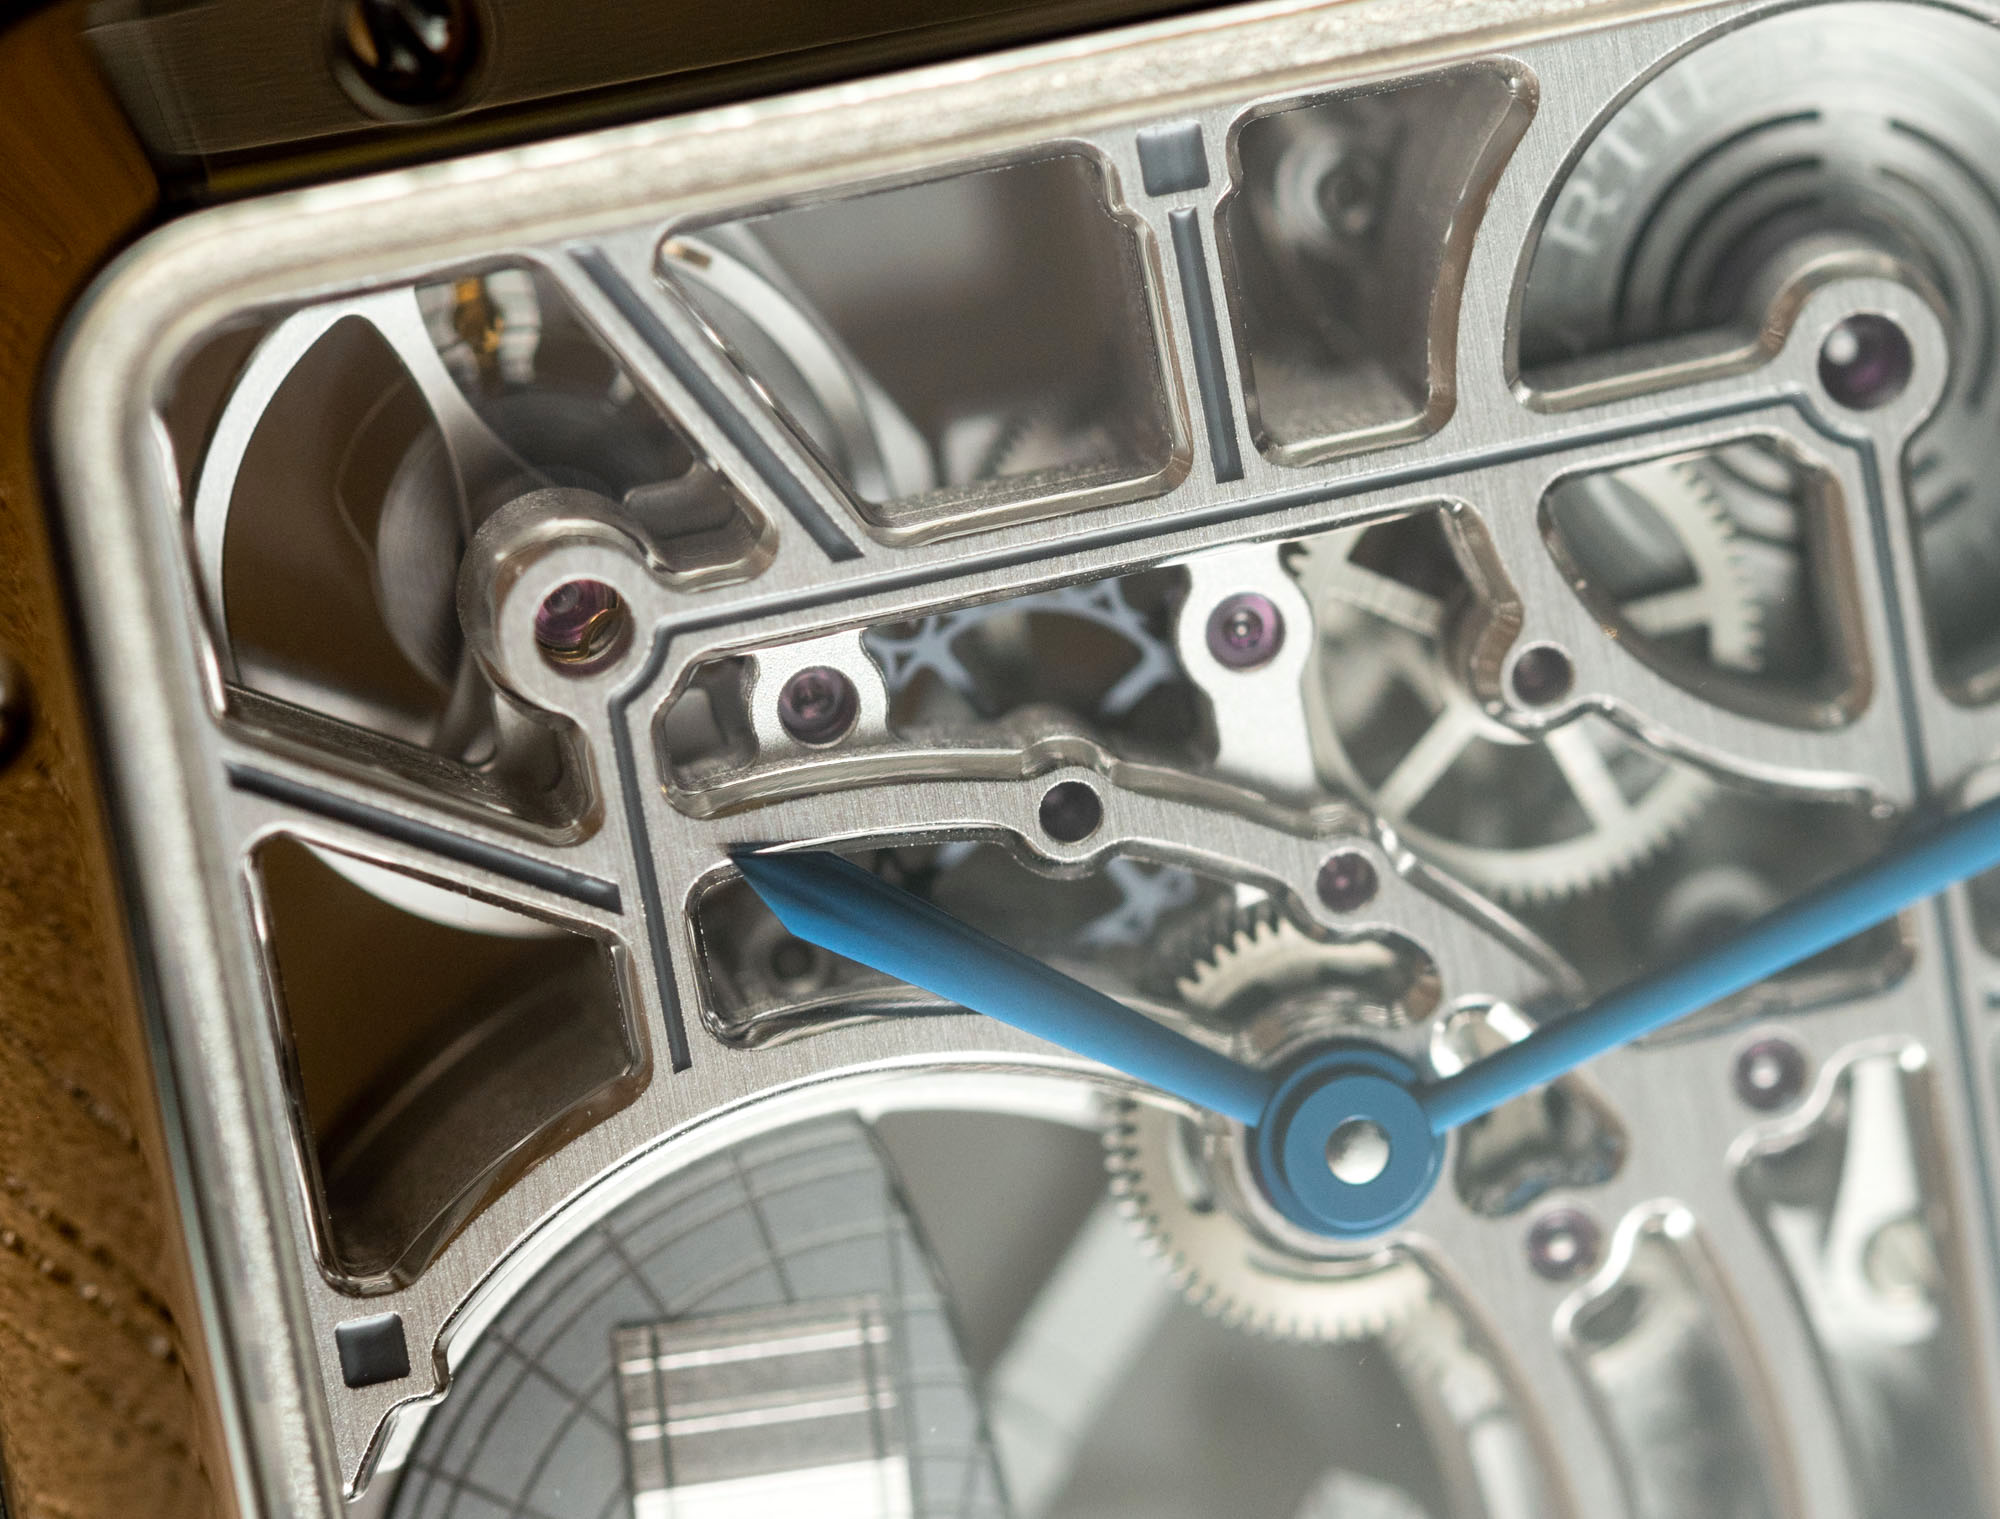 Обзор часов Cartier Santos-Dumont Micro-Rotor из нержавеющей стали